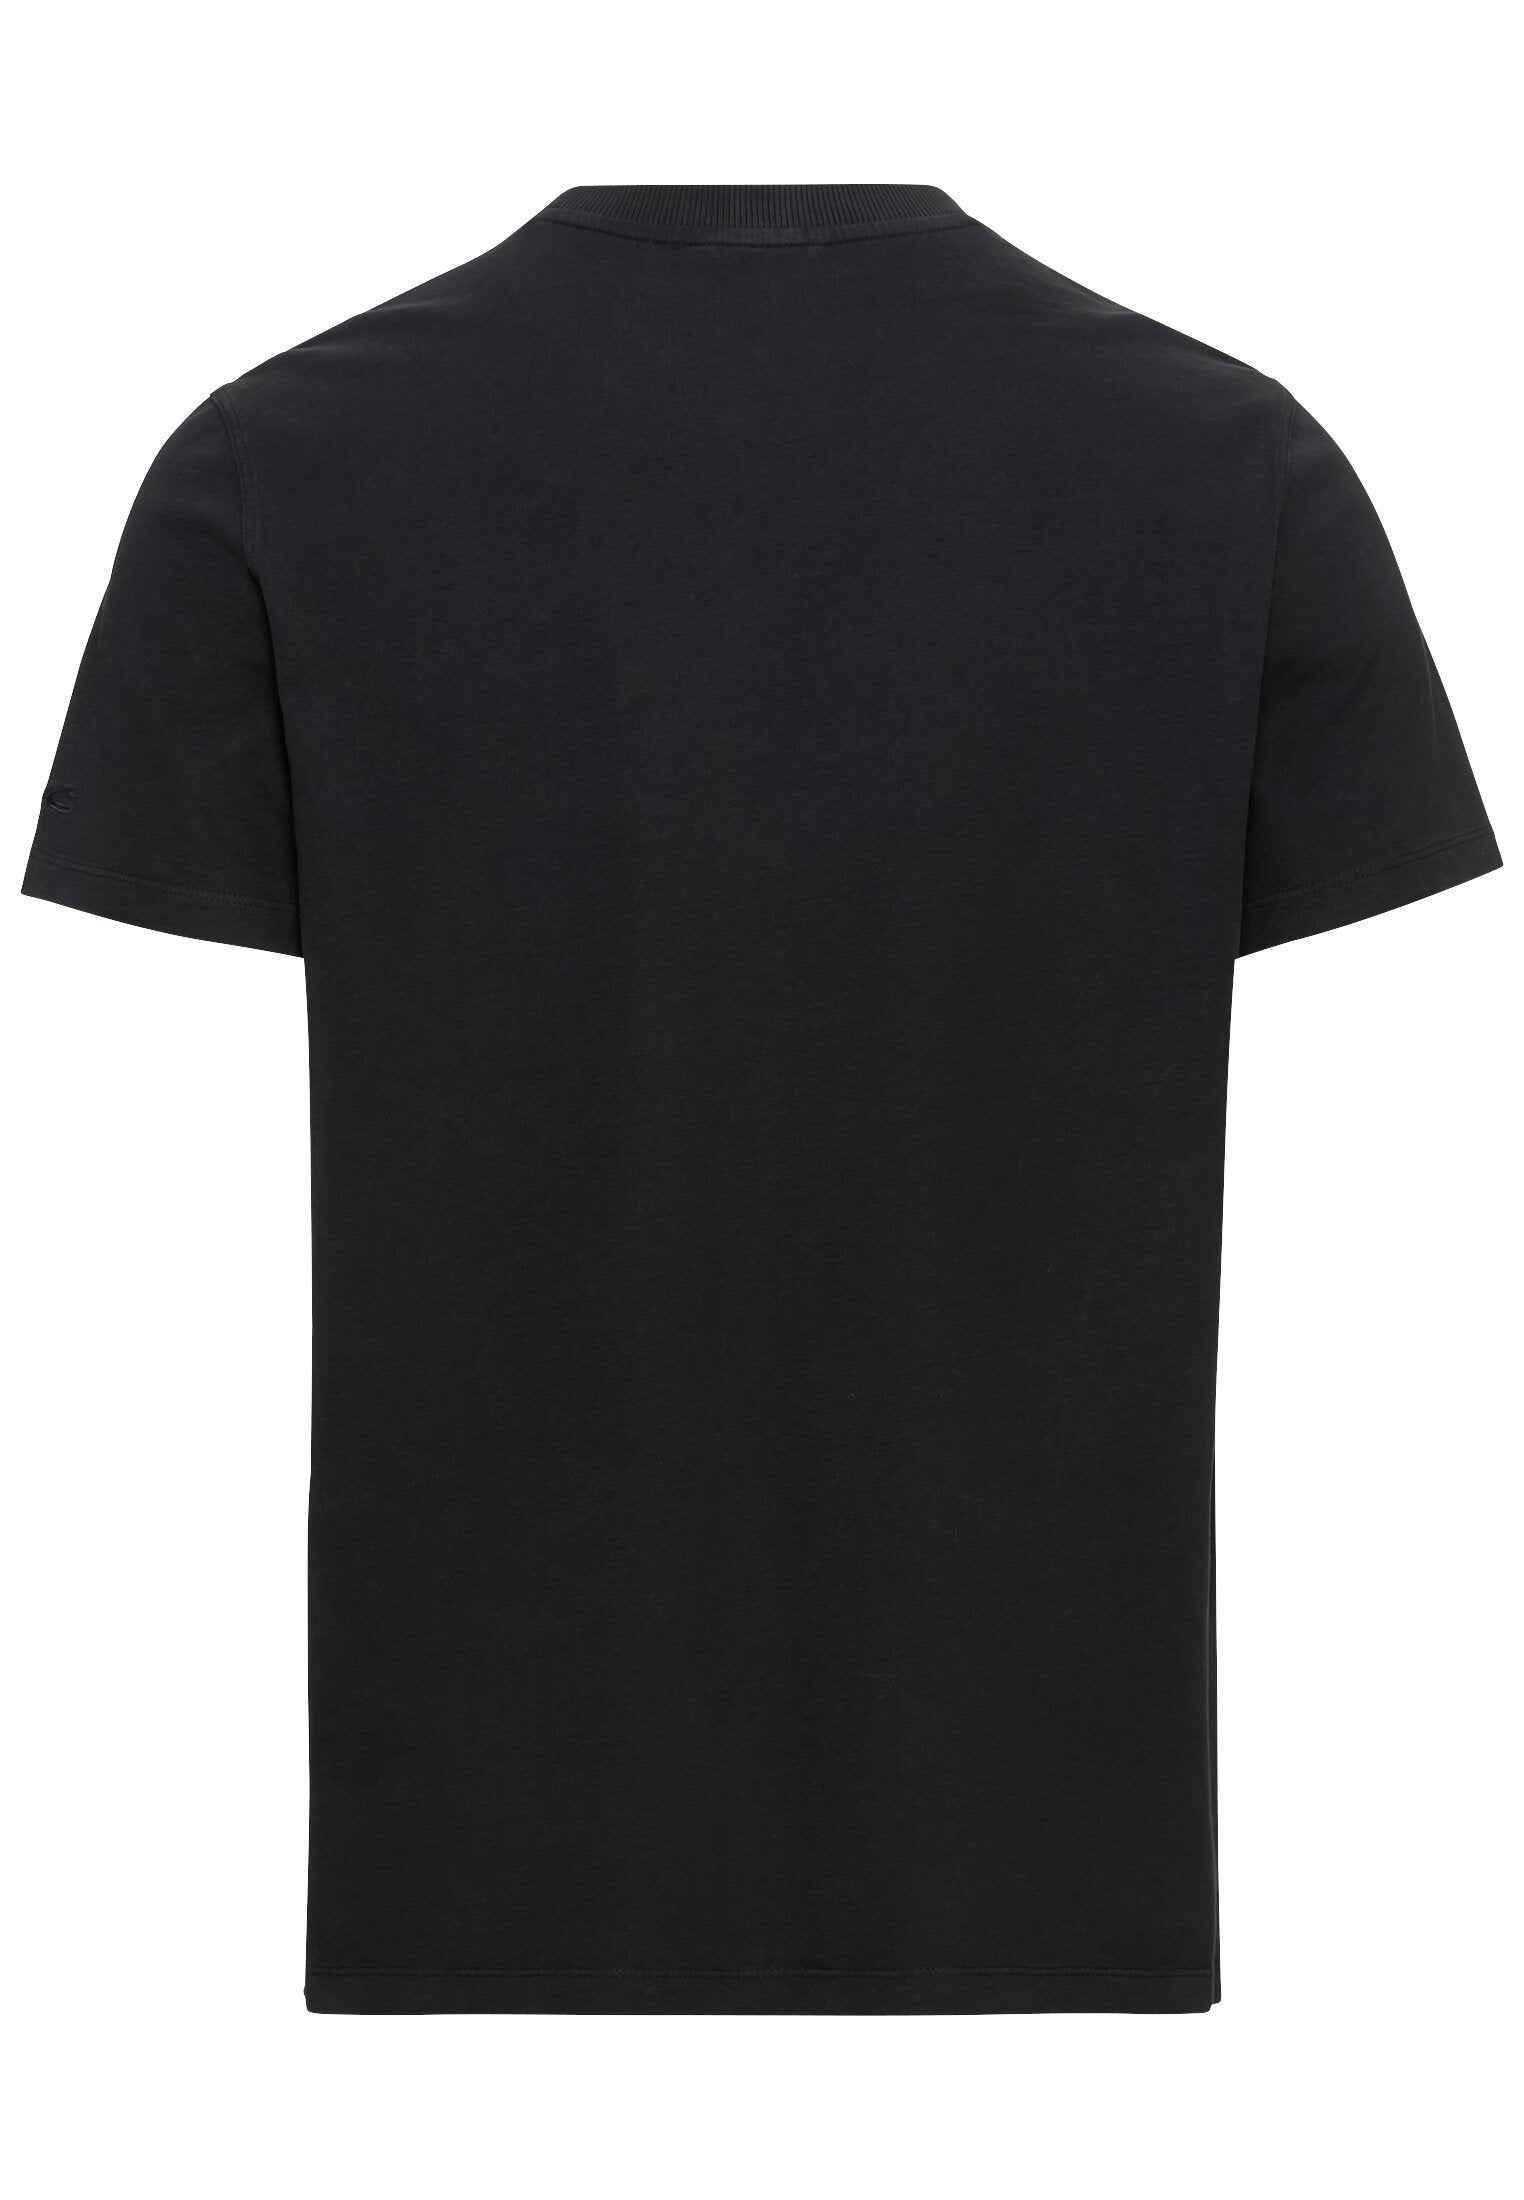 T-Shirt 1/2Arm (Asphalt)